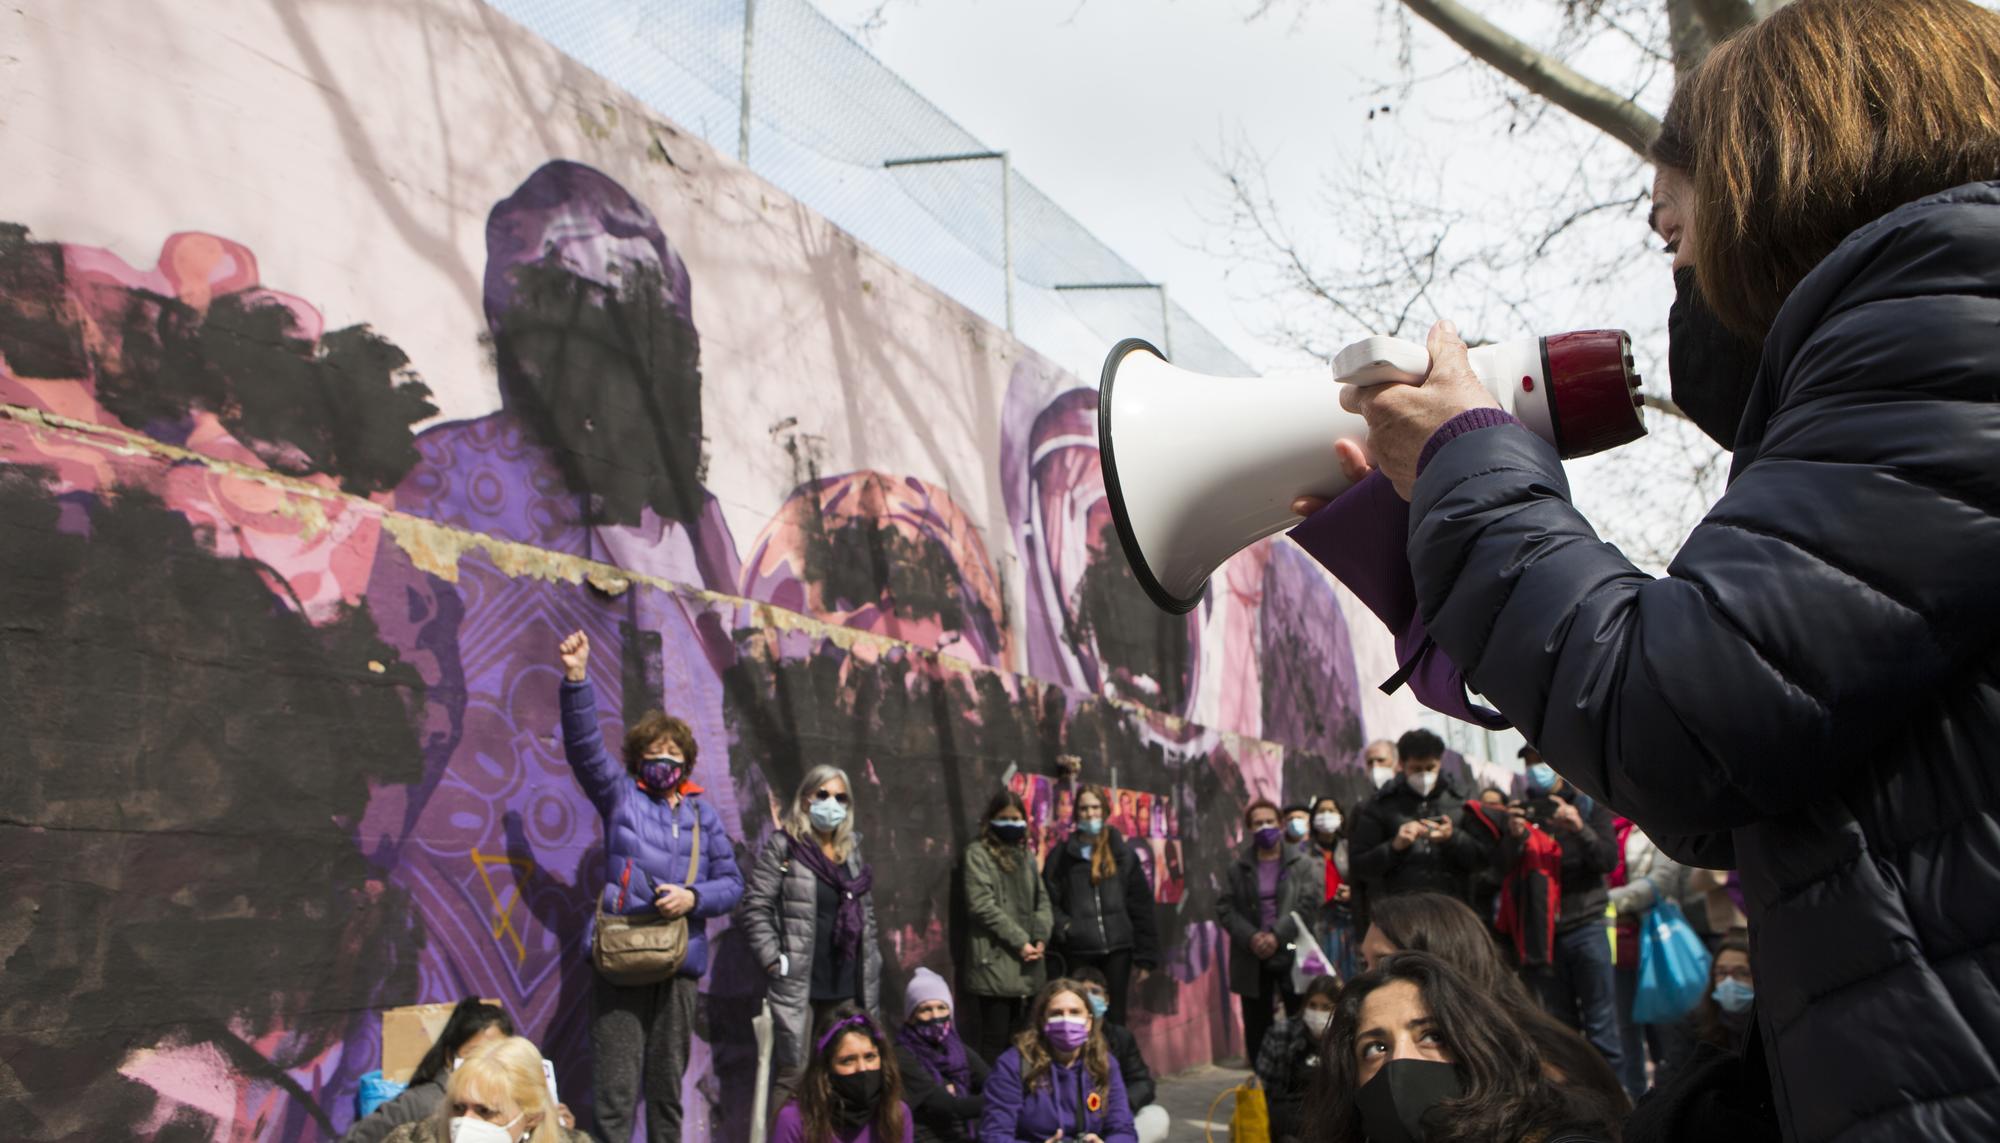 concentración frente al mural feminista vandalizado el 8M en Madrid - 7